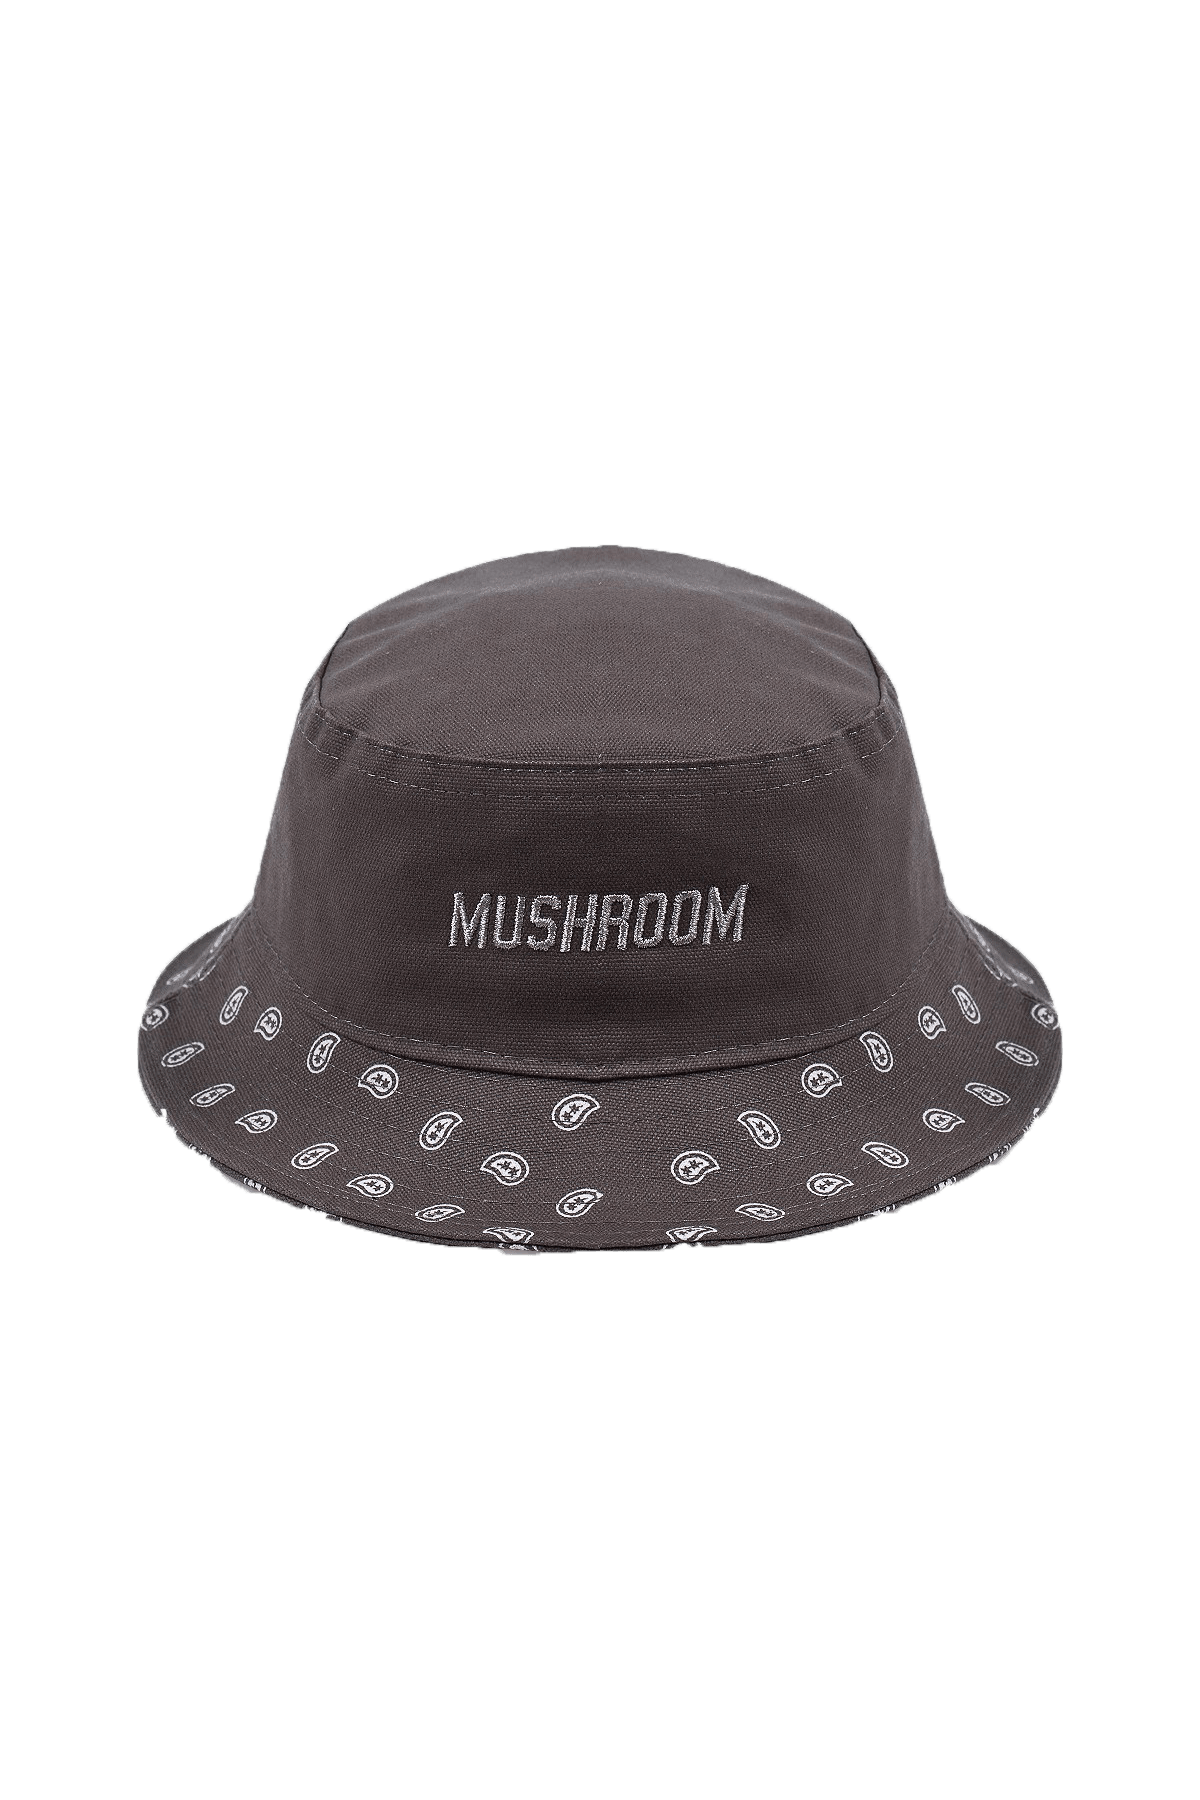 Mushroom ''The Dust Bowl'' Brown Bucket Hat